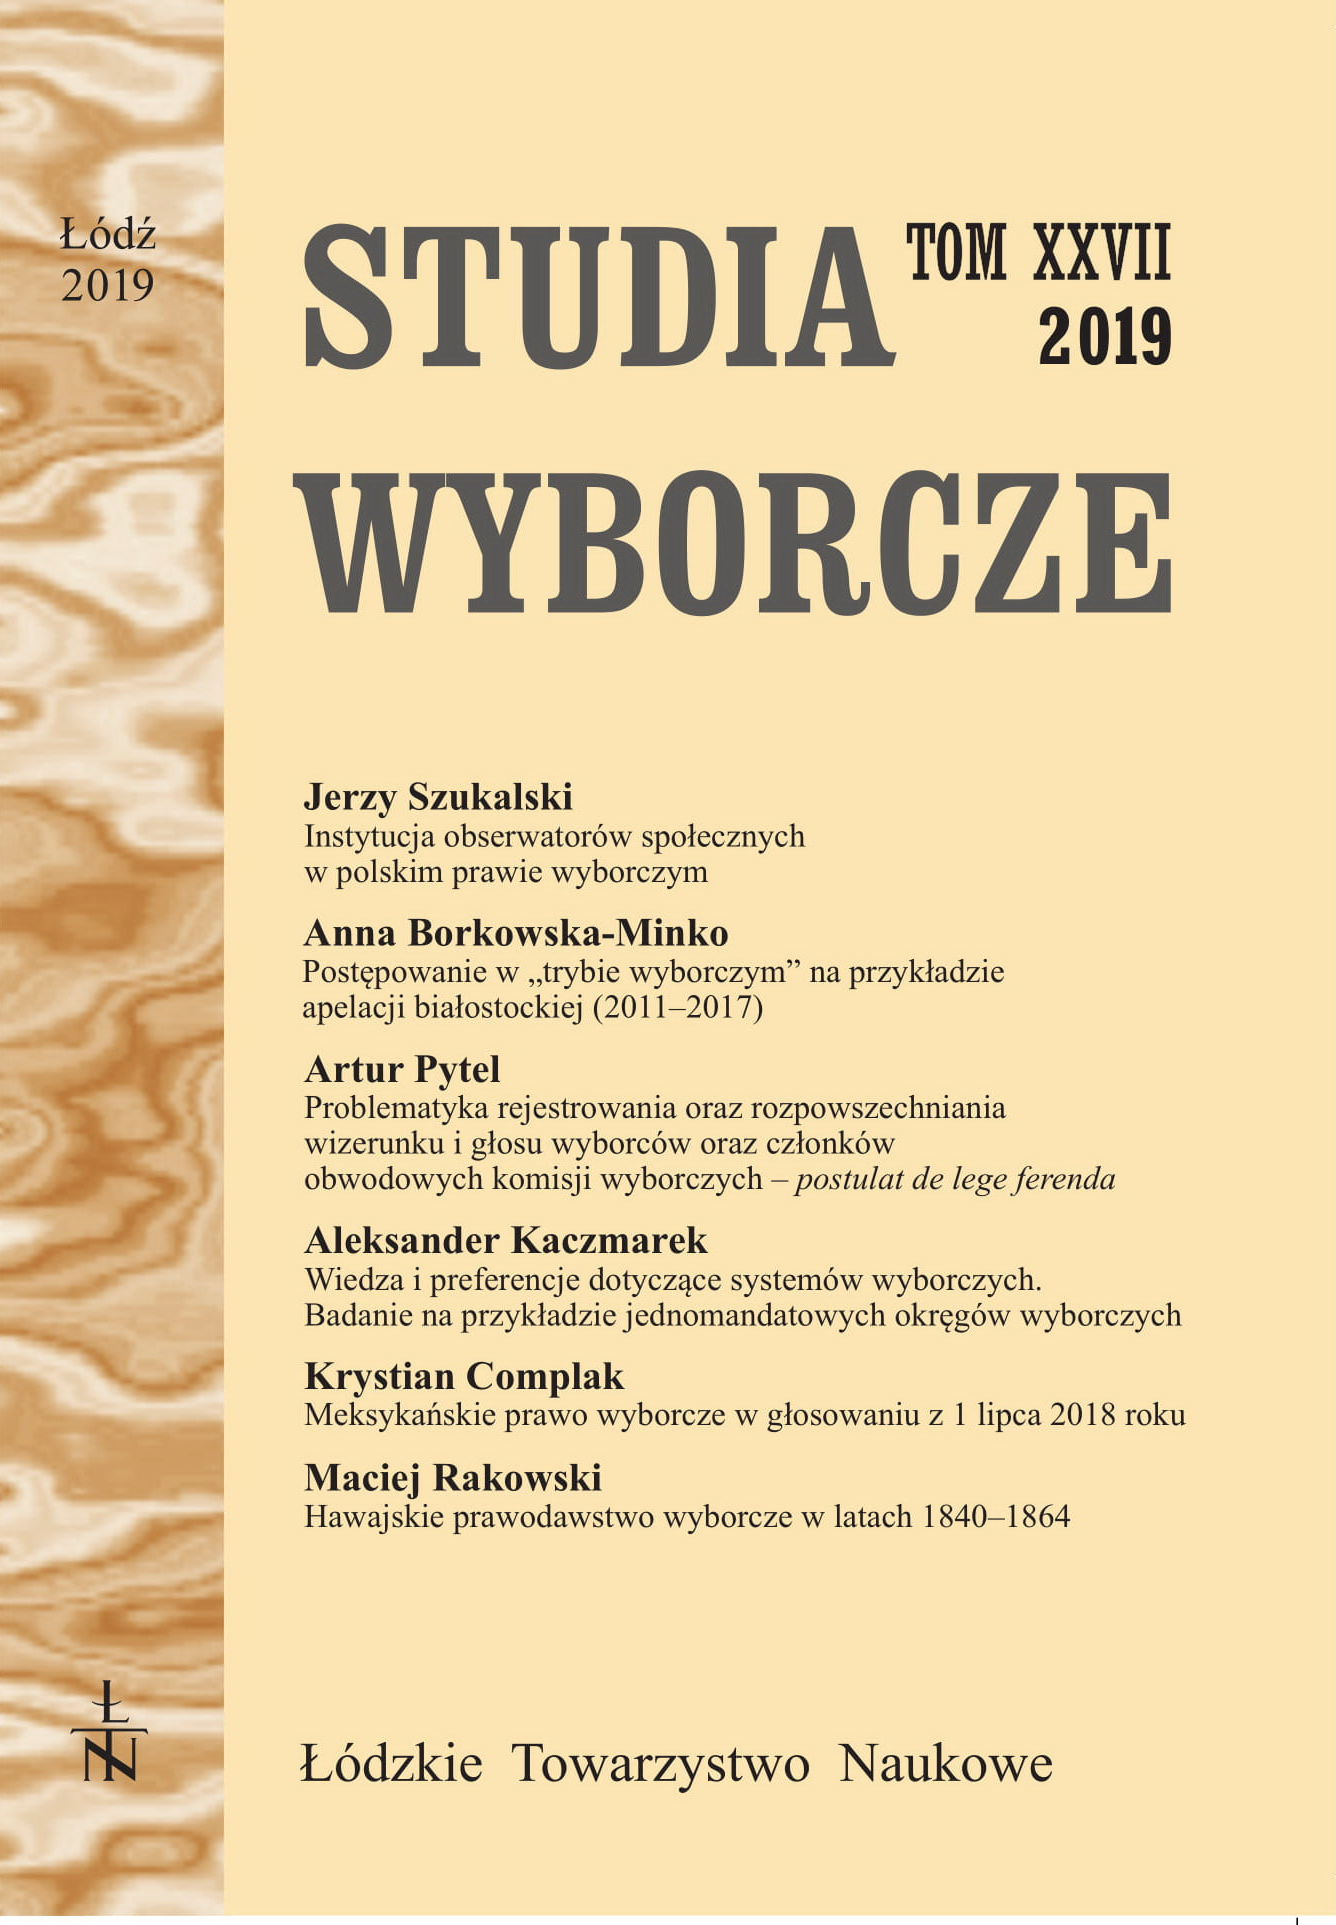 Sprawozdanie z obchodów światowego dnia wyborów, Toruń 7 lutego 2019 roku